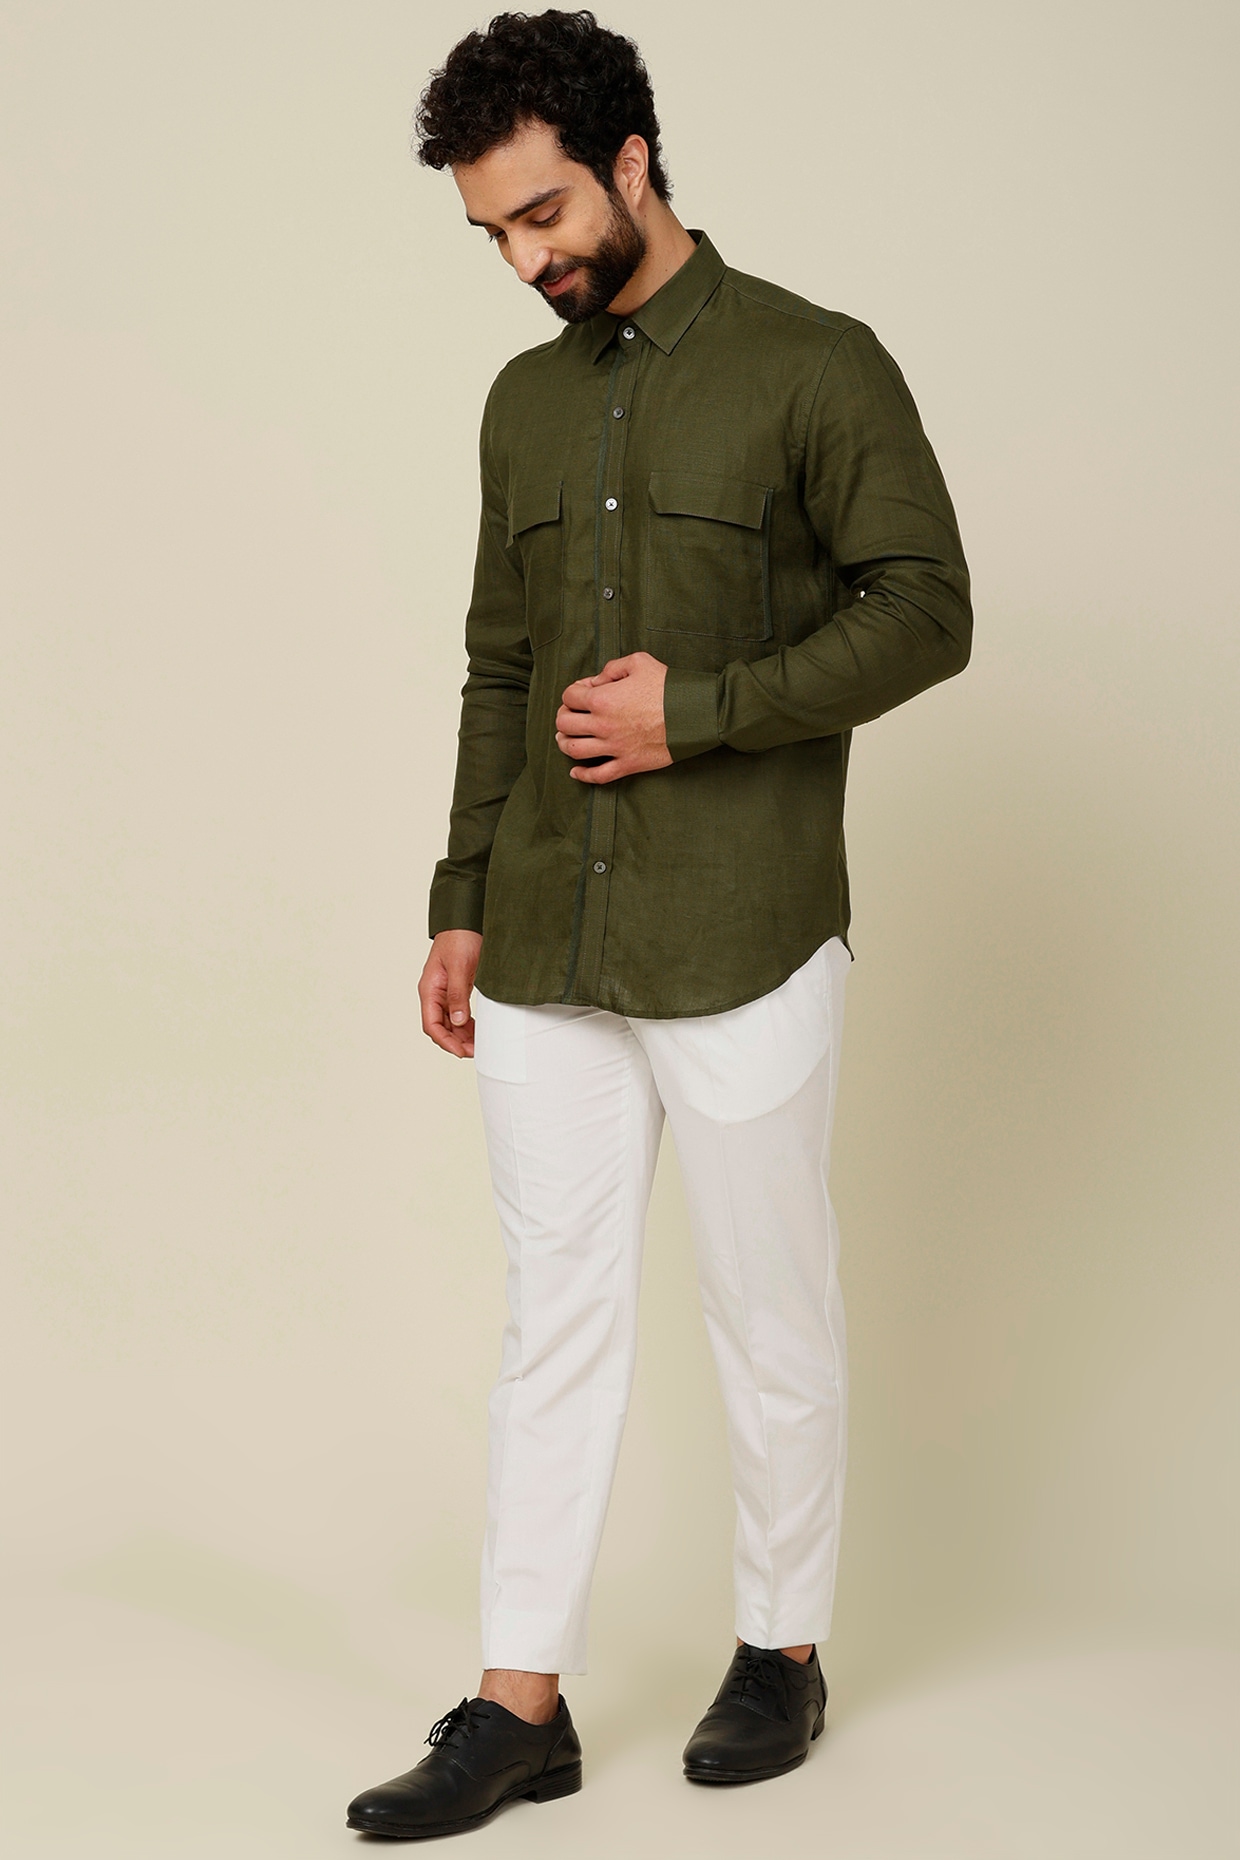 green shirt and brown pants Saiyan fashion clothing